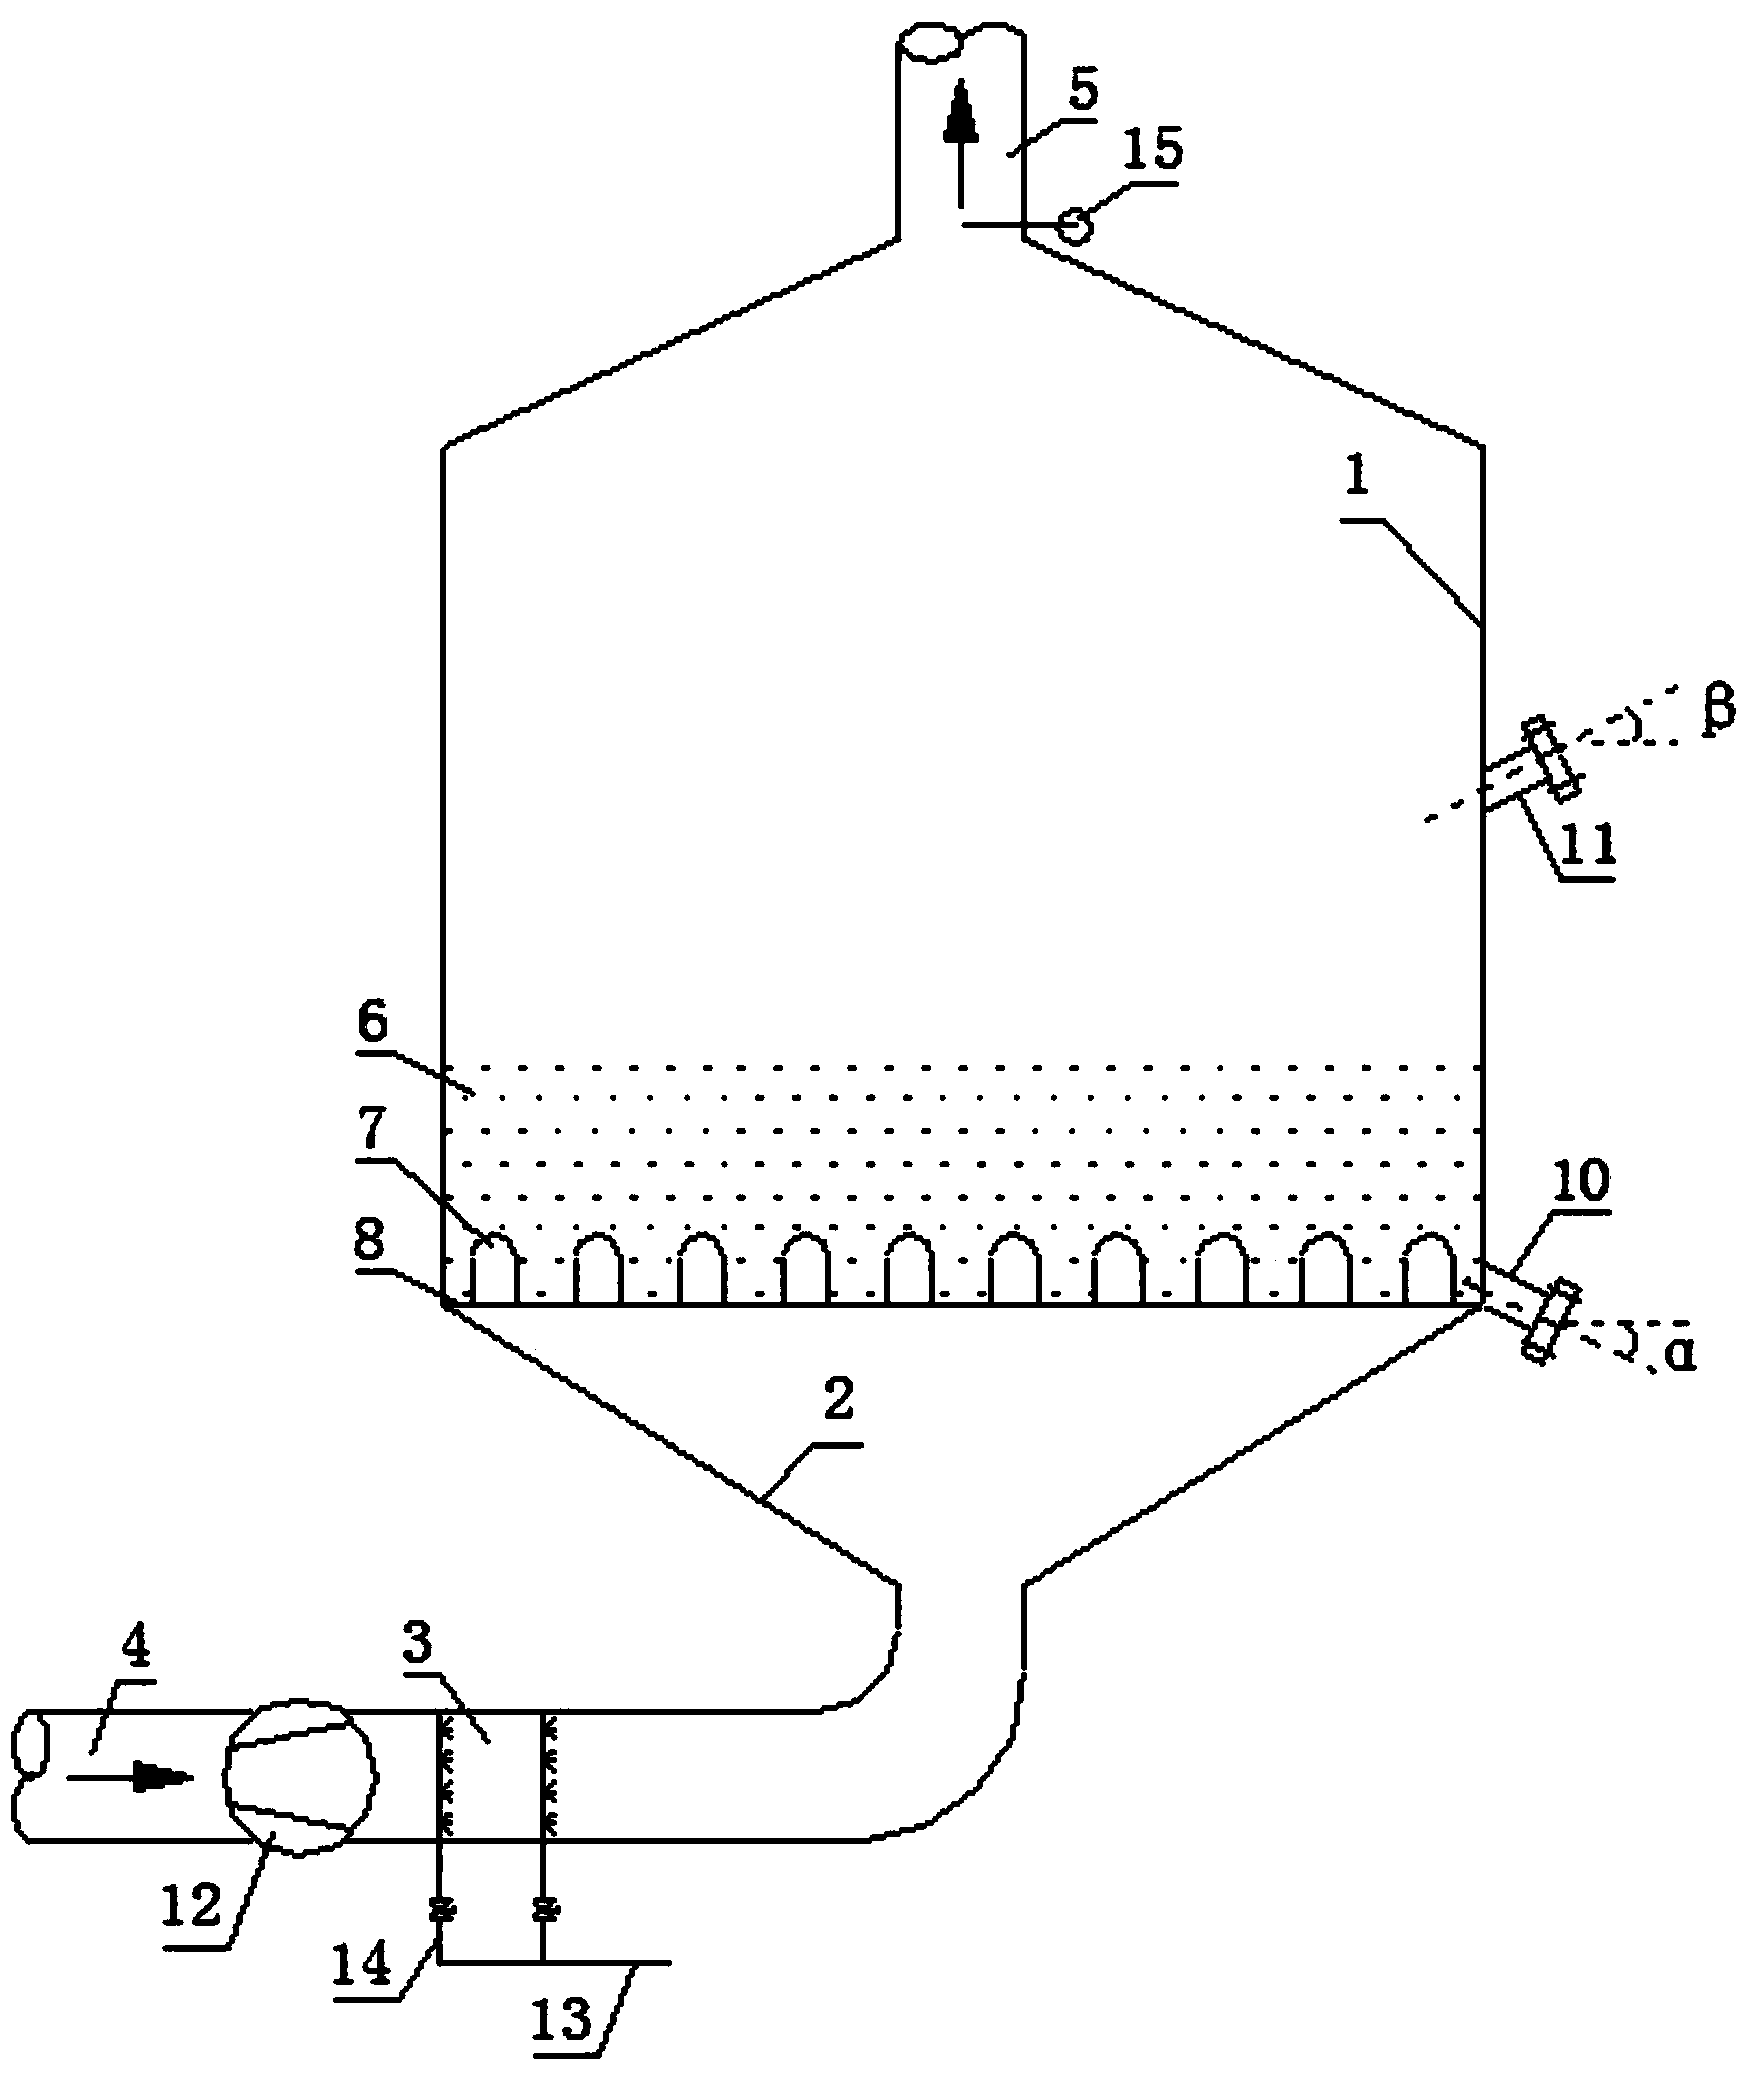 Smoke SCR denitration system for fluidized fuel gas kiln